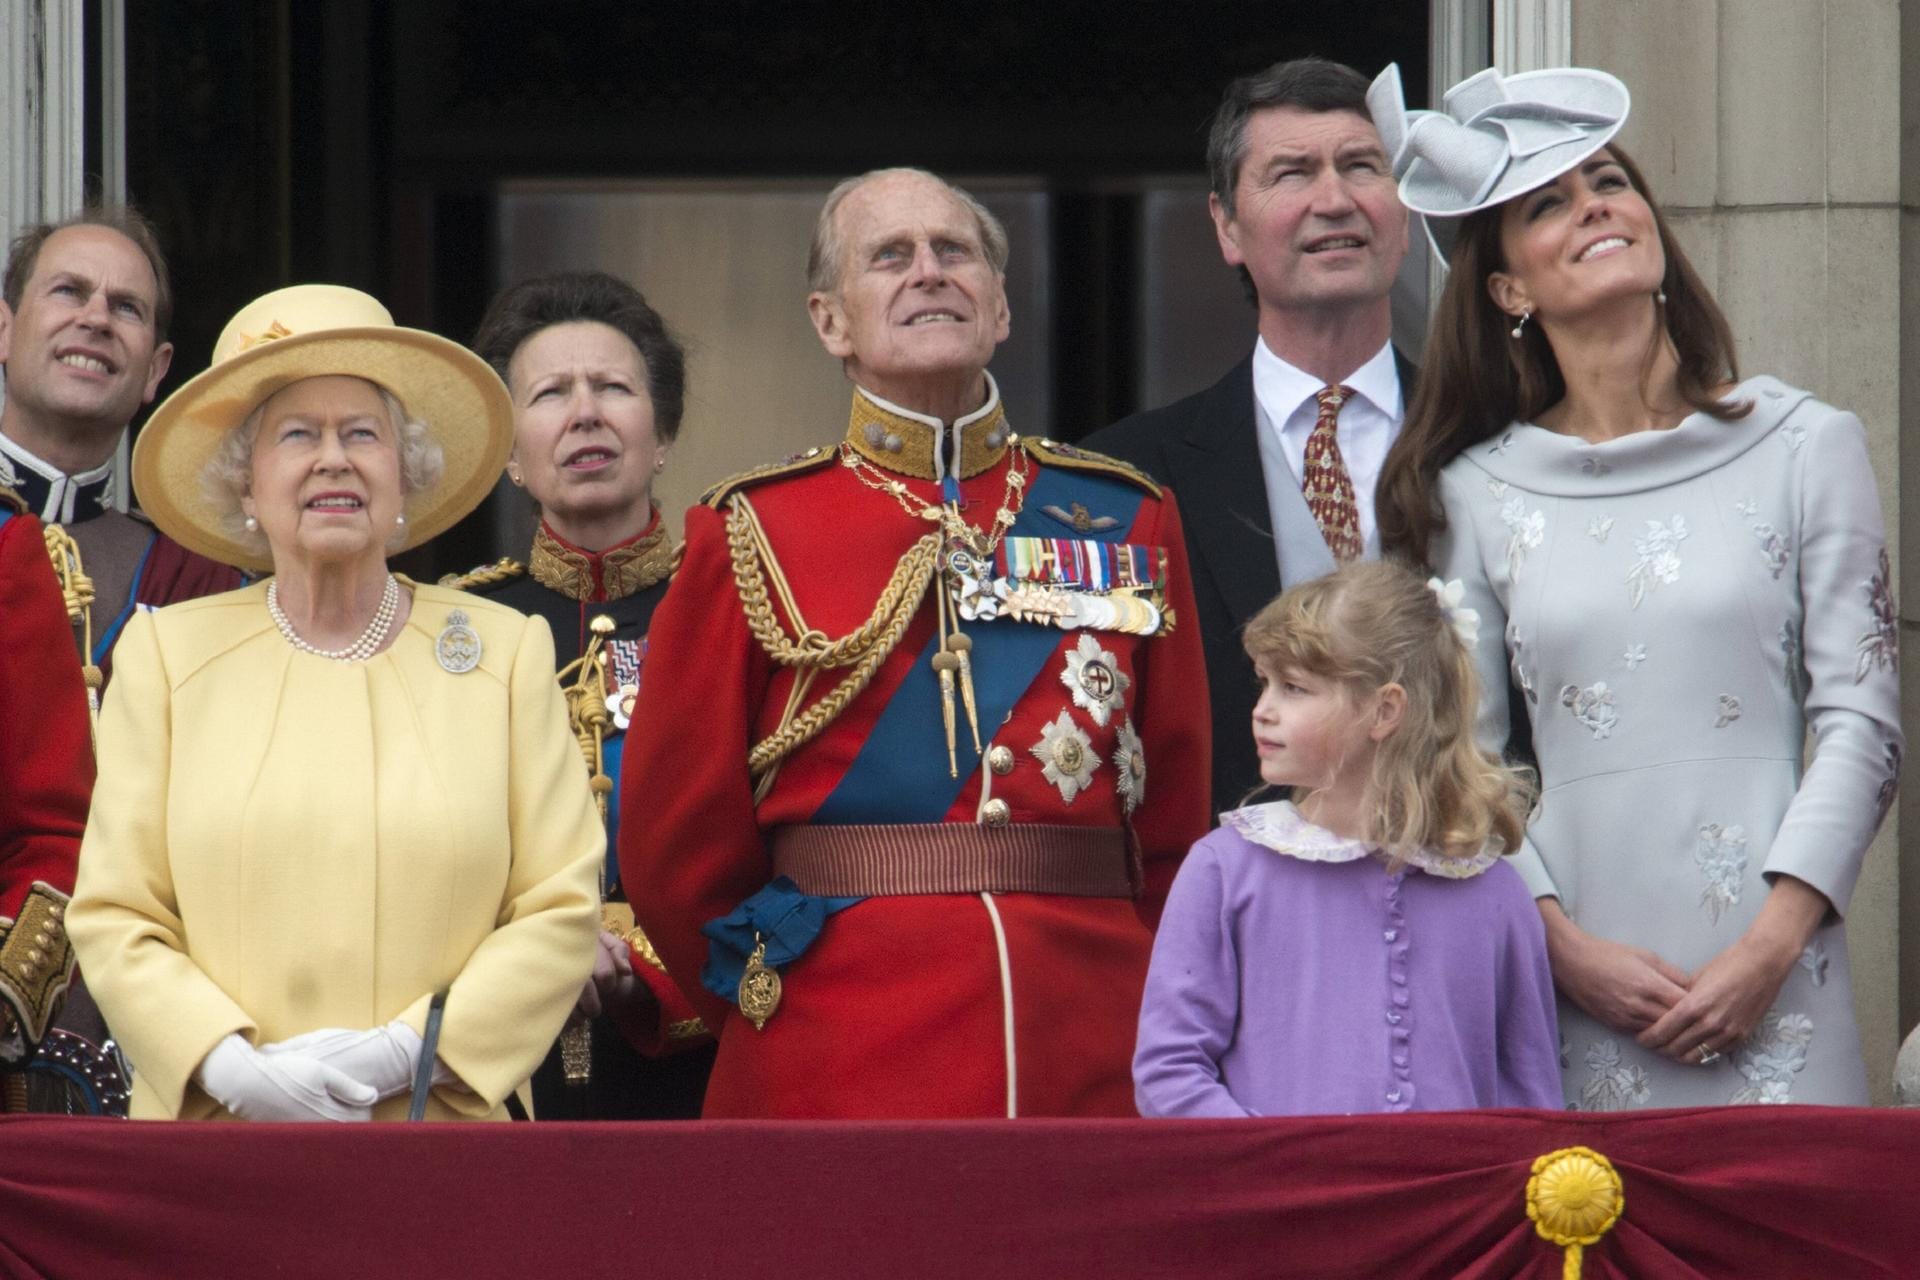 2012: Die Queen und ihr Mann Prinz Philip. Hinter ihnen steht ihre Tochter Prinzessin Anne und neben ihnen sieht man die Frau ihres Enkels Herzogin Kate.